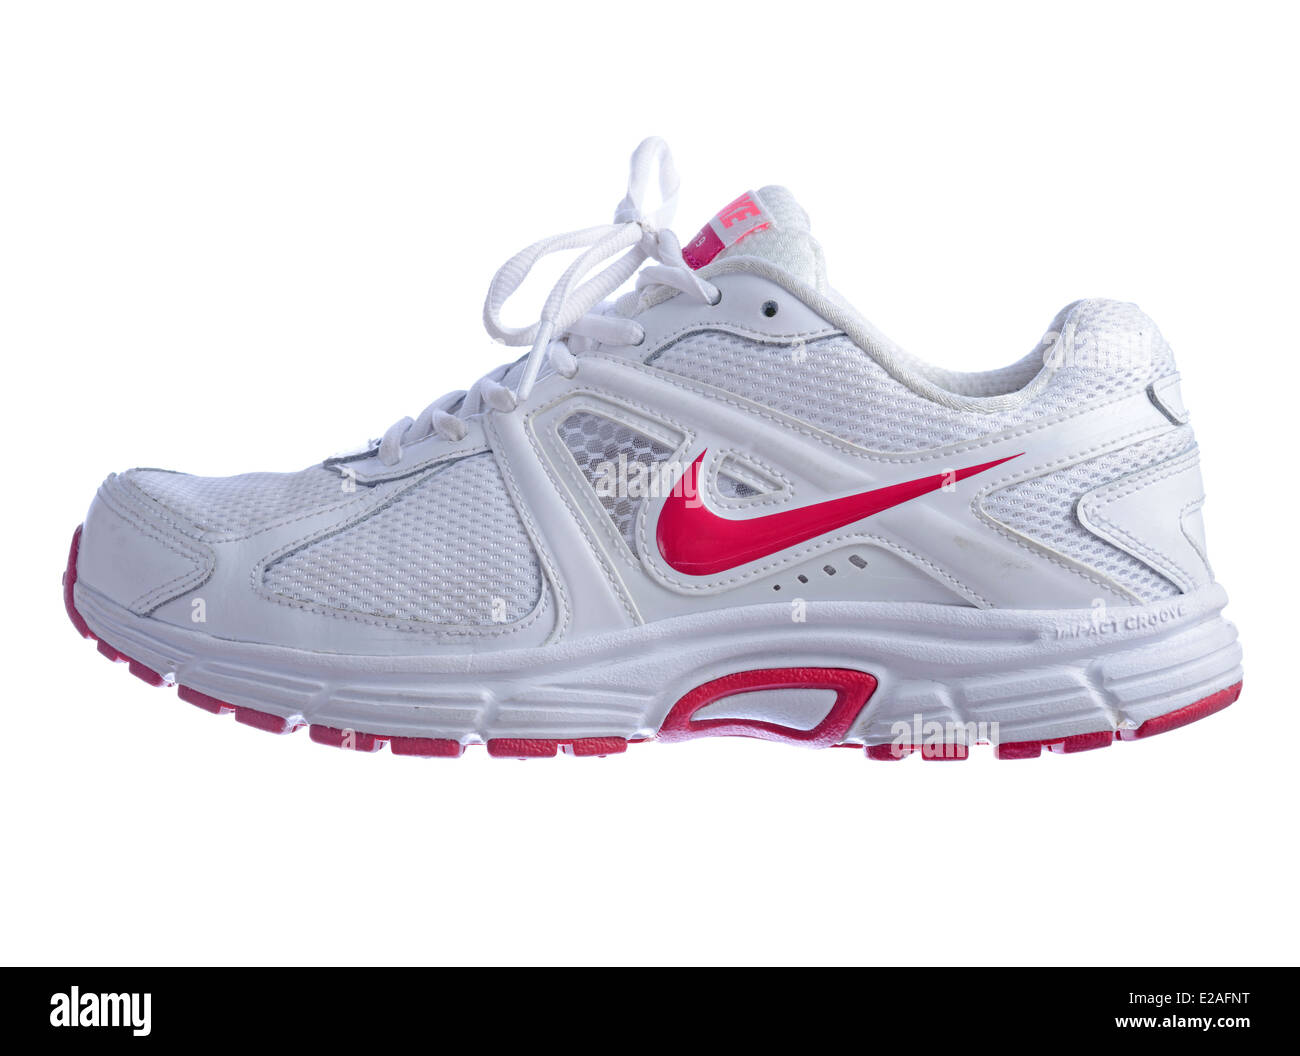 Nike Dart 9 blanc chaussures de course avec logo rose isolé sur fond blanc  Photo Stock - Alamy